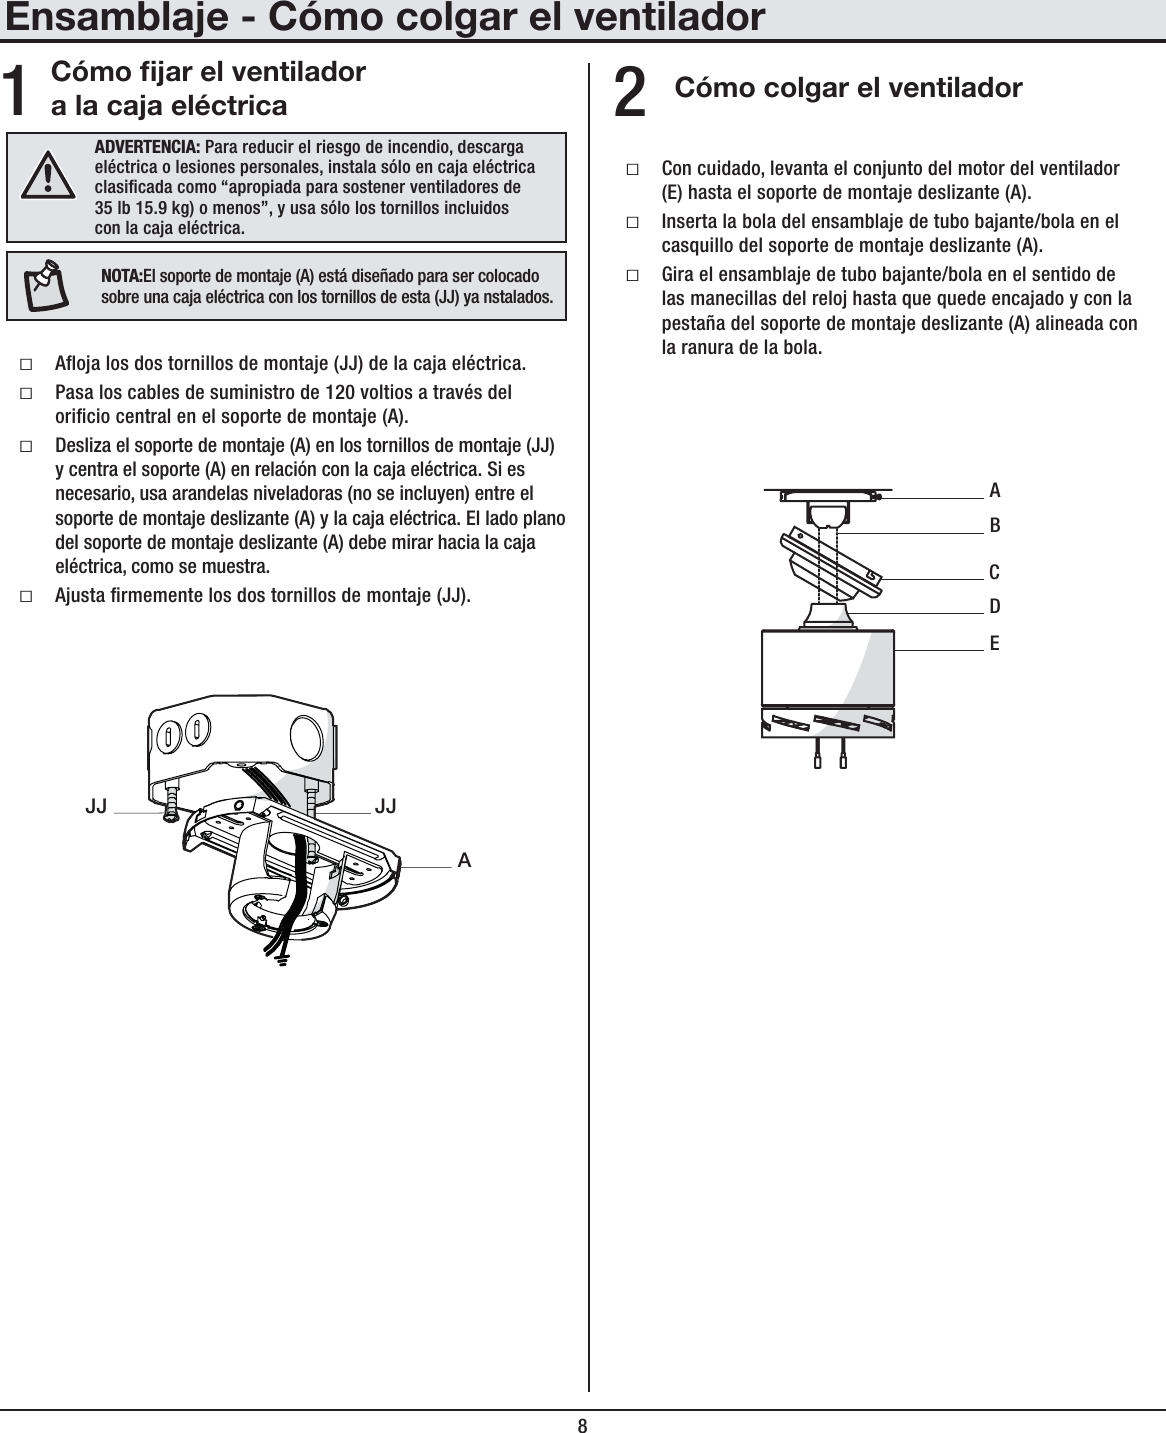 8Ensamblaje - Cómo colgar el ventiladorCómo jar el ventilador a la caja eléctrica Cómo colgar el ventiladorƑAoja los dos tornillos de montaje (JJ) de la caja eléctrica.ƑPasa los cables de suministro de 120 voltios a través del oricio central en el soporte de montaje (A).ƑDesliza el soporte de montaje (A) en los tornillos de montaje (JJ) y centra el soporte (A) en relación con la caja eléctrica. Si es necesario, usa arandelas niveladoras (no se incluyen) entre el soporte de montaje deslizante (A) y la caja eléctrica. El lado plano del soporte de montaje deslizante (A) debe mirar hacia la caja eléctrica, como se muestra.ƑAjusta rmemente los dos tornillos de montaje (JJ).ƑCon cuidado, levanta el conjunto del motor del ventilador (E) hasta el soporte de montaje deslizante (A).ƑInserta la bola del ensamblaje de tubo bajante/bola en el casquillo del soporte de montaje deslizante (A).ƑGira el ensamblaje de tubo bajante/bola en el sentido de las manecillas del reloj hasta que quede encajado y con la pestaña del soporte de montaje deslizante (A) alineada con la ranura de la bola.12ADVERTENCIA: Para reducir el riesgo de incendio, descarga eléctrica o lesiones personales, instala sólo en caja eléctrica clasicada como “apropiada para sostener ventiladores de 35 lb 15.9 kg) o menos”, y usa sólo los tornillos incluidos con la caja eléctrica.AJJJJABECDNOTA:El soporte de montaje (A) está diseñado para ser colocado sobre una caja eléctrica con los tornillos de esta (JJ) ya nstalados.